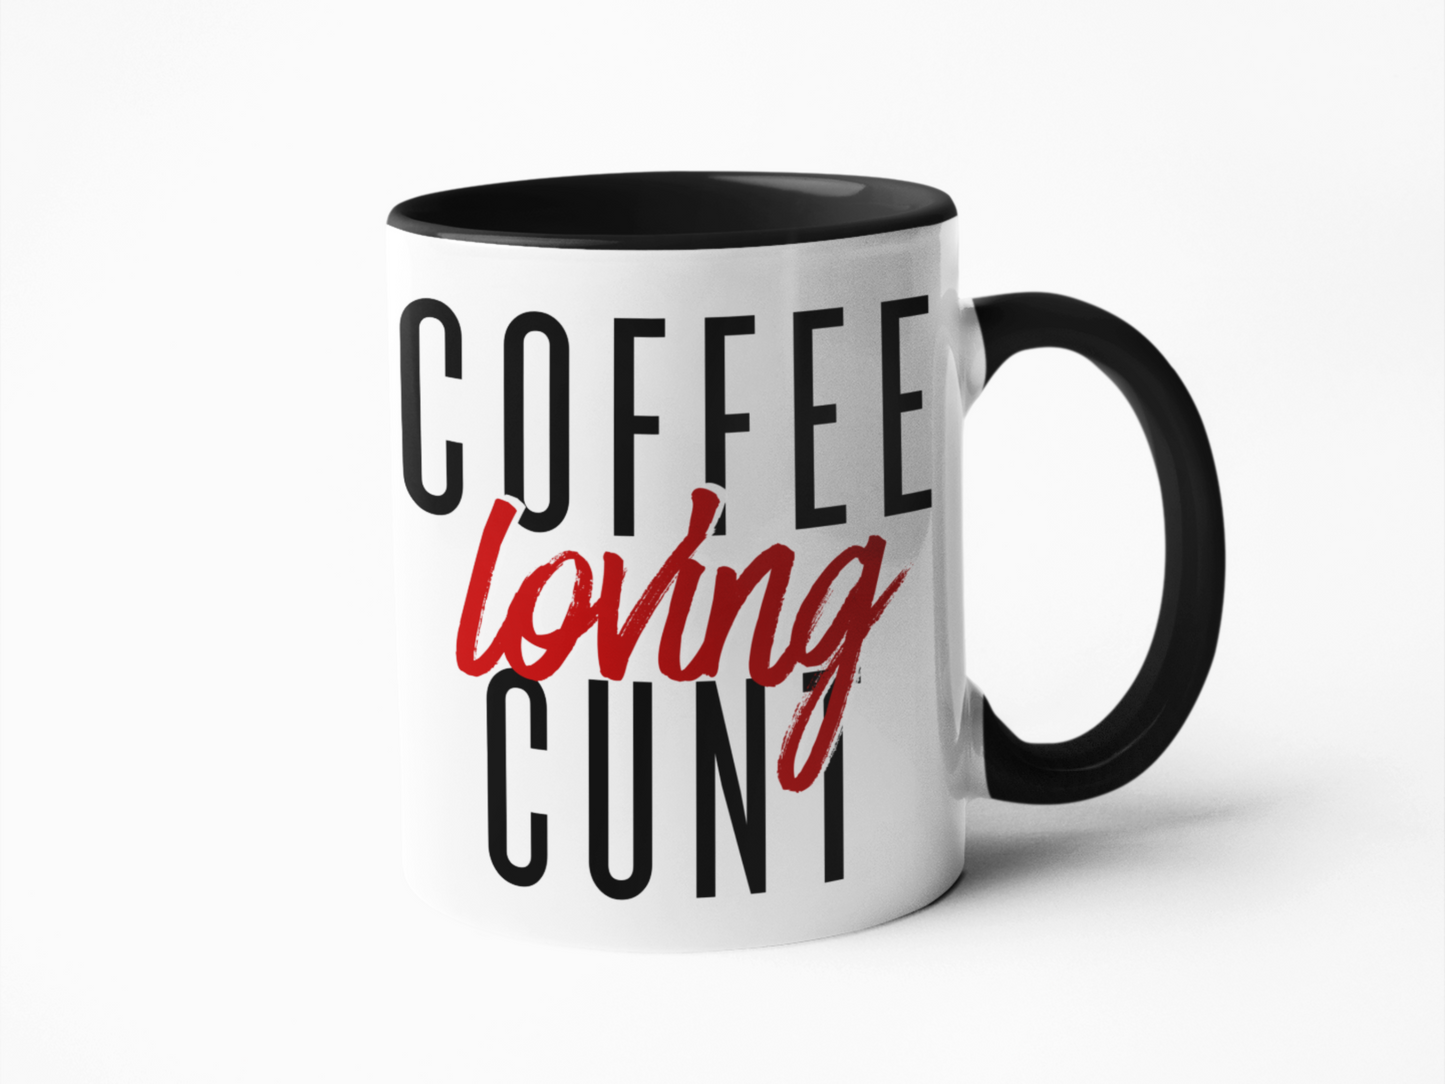 Coffee loving cunt funny coffee mug